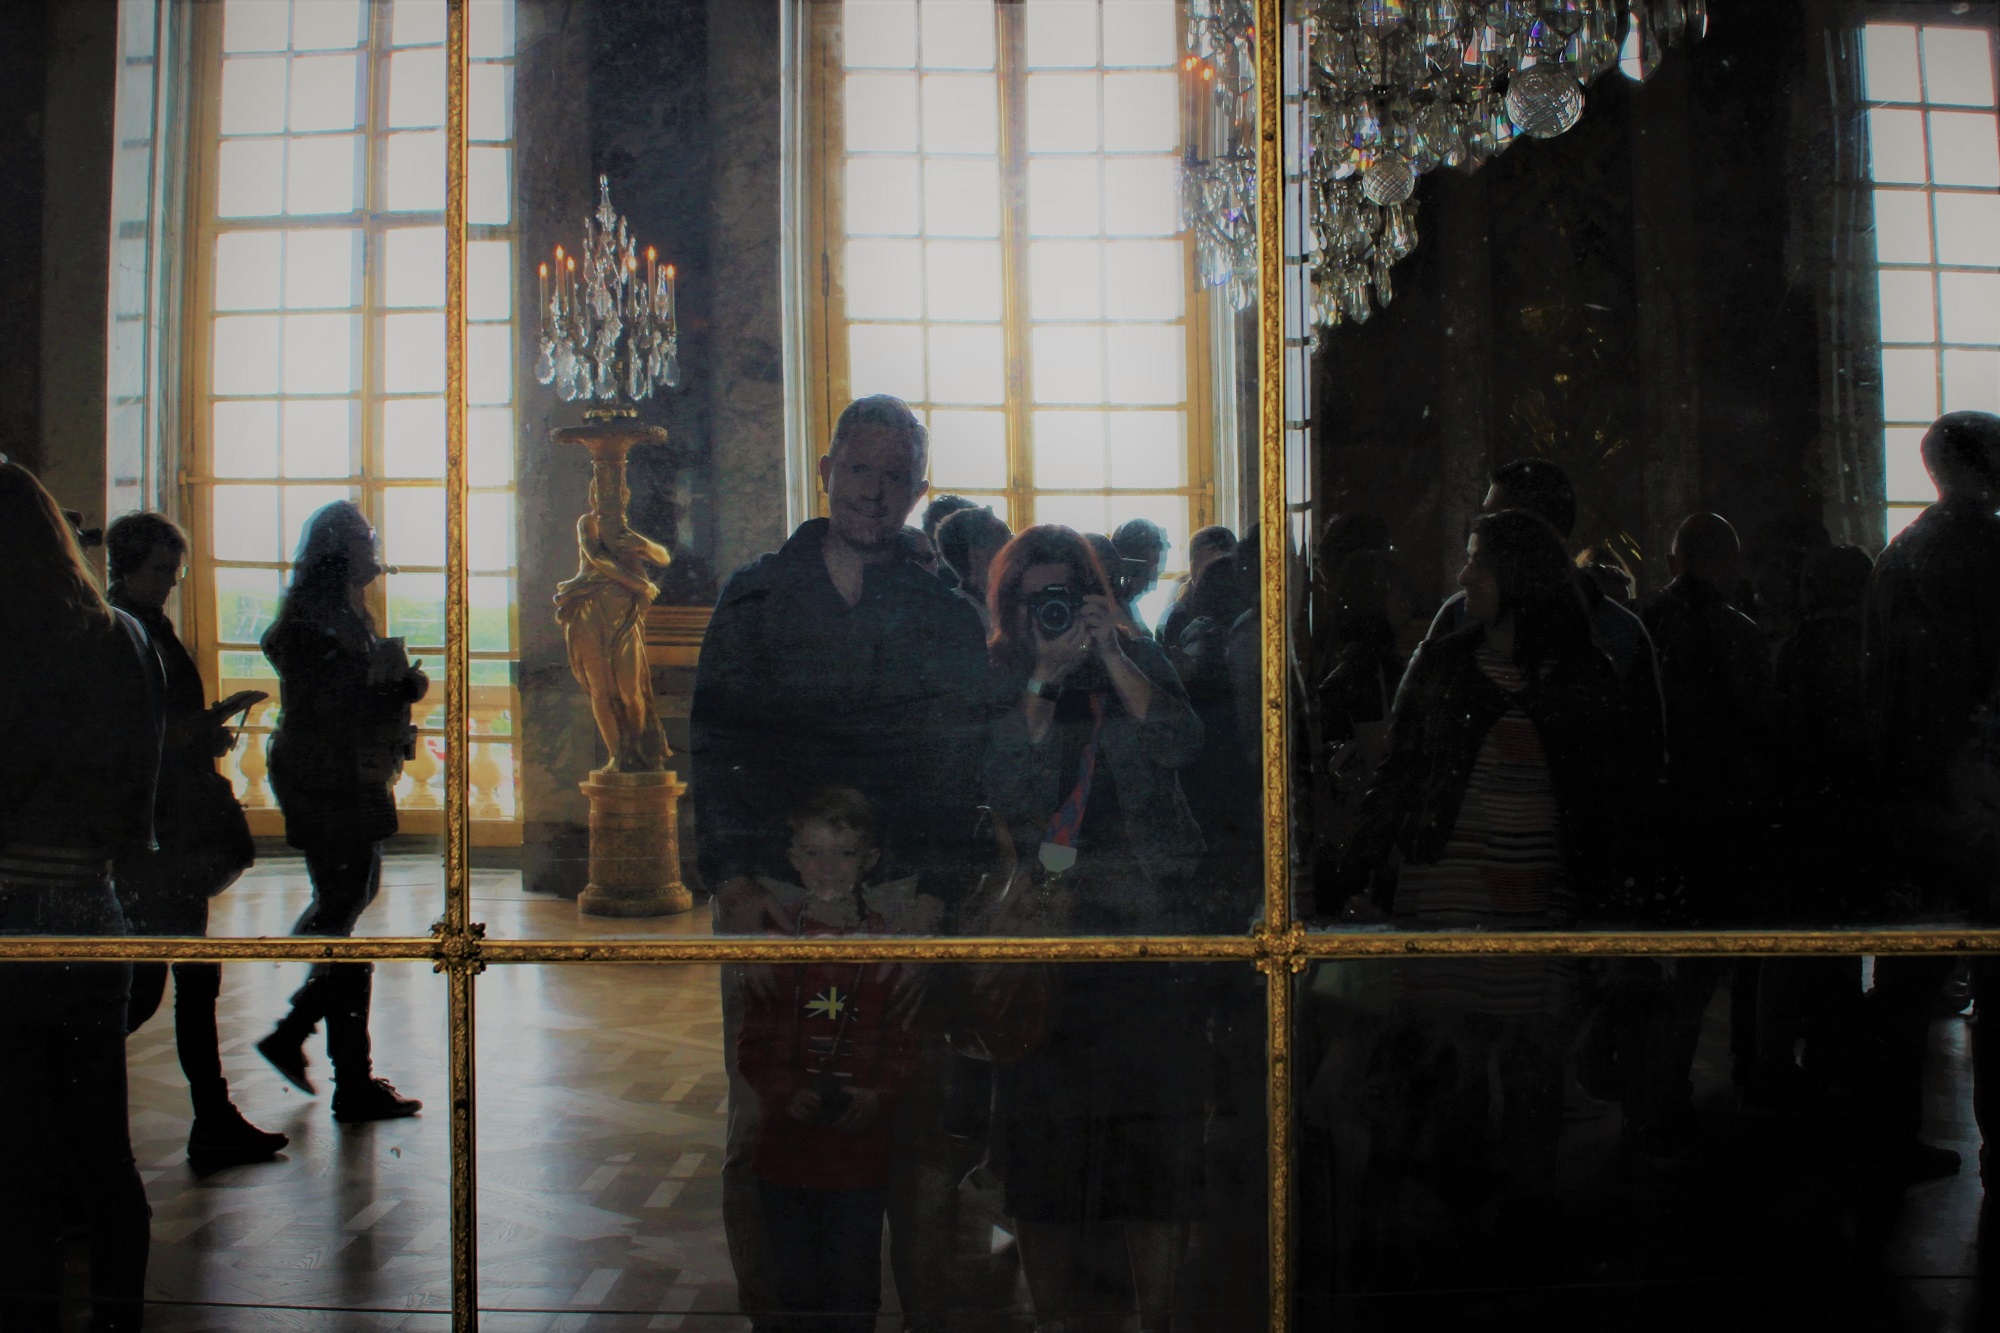 Hall of Mirrors at Versailles